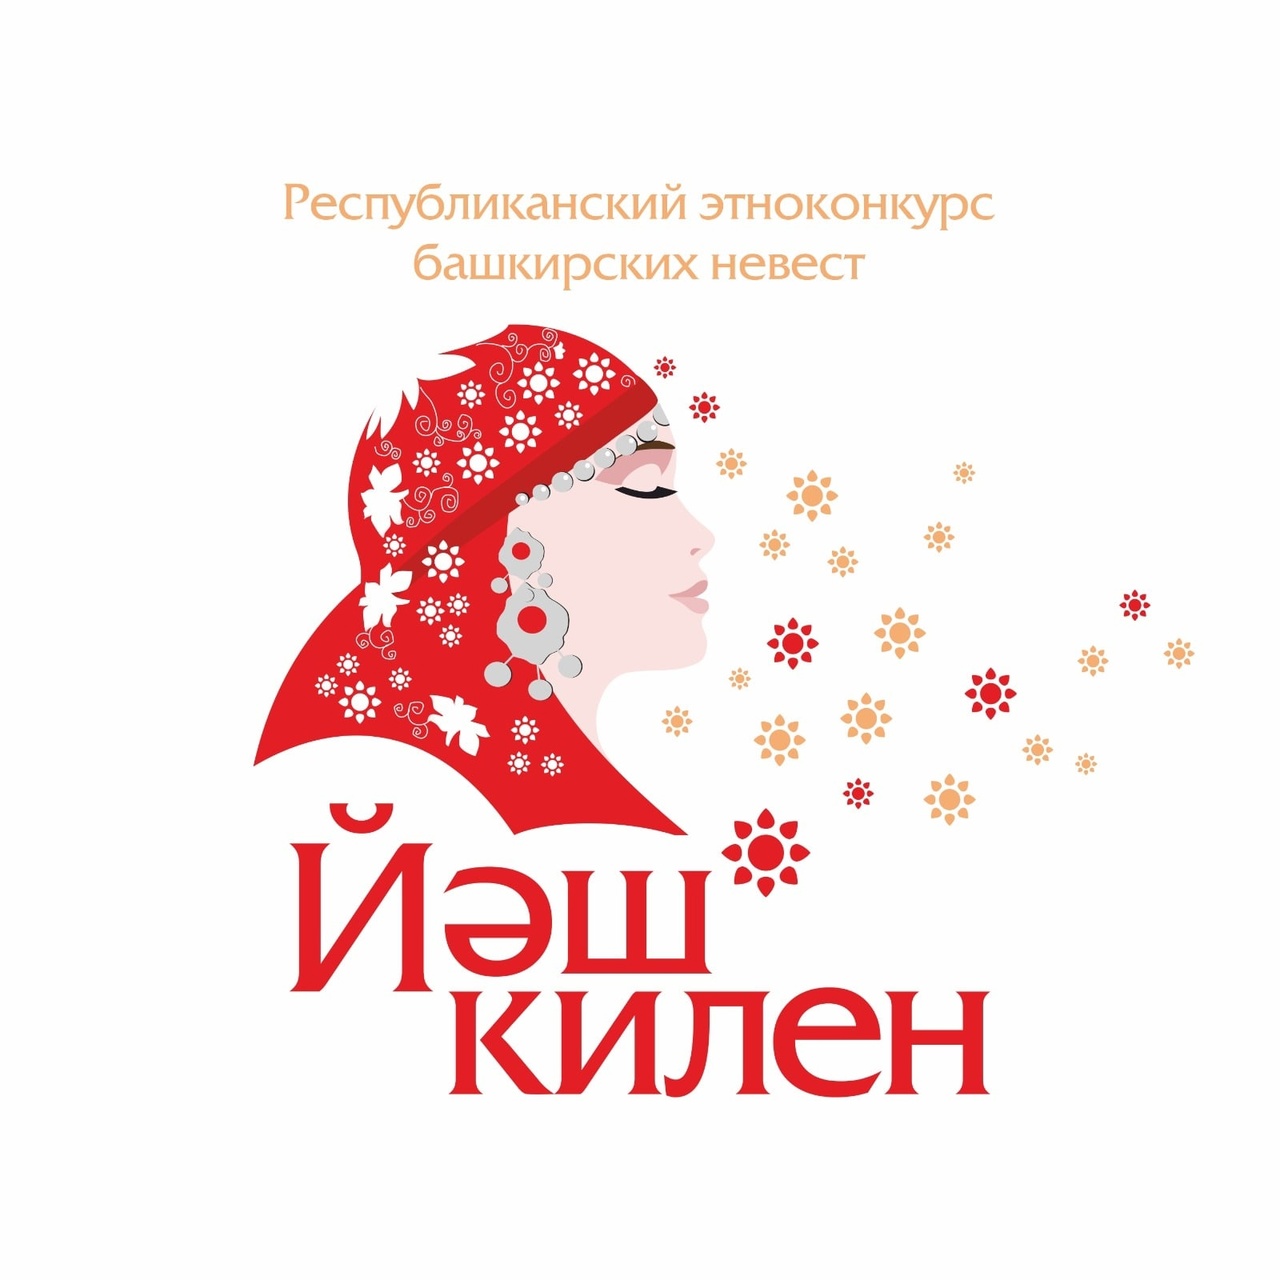 В Балтачевском районе пройдет IV Республиканский этноконкурс башкирских невест «Йәш килен»